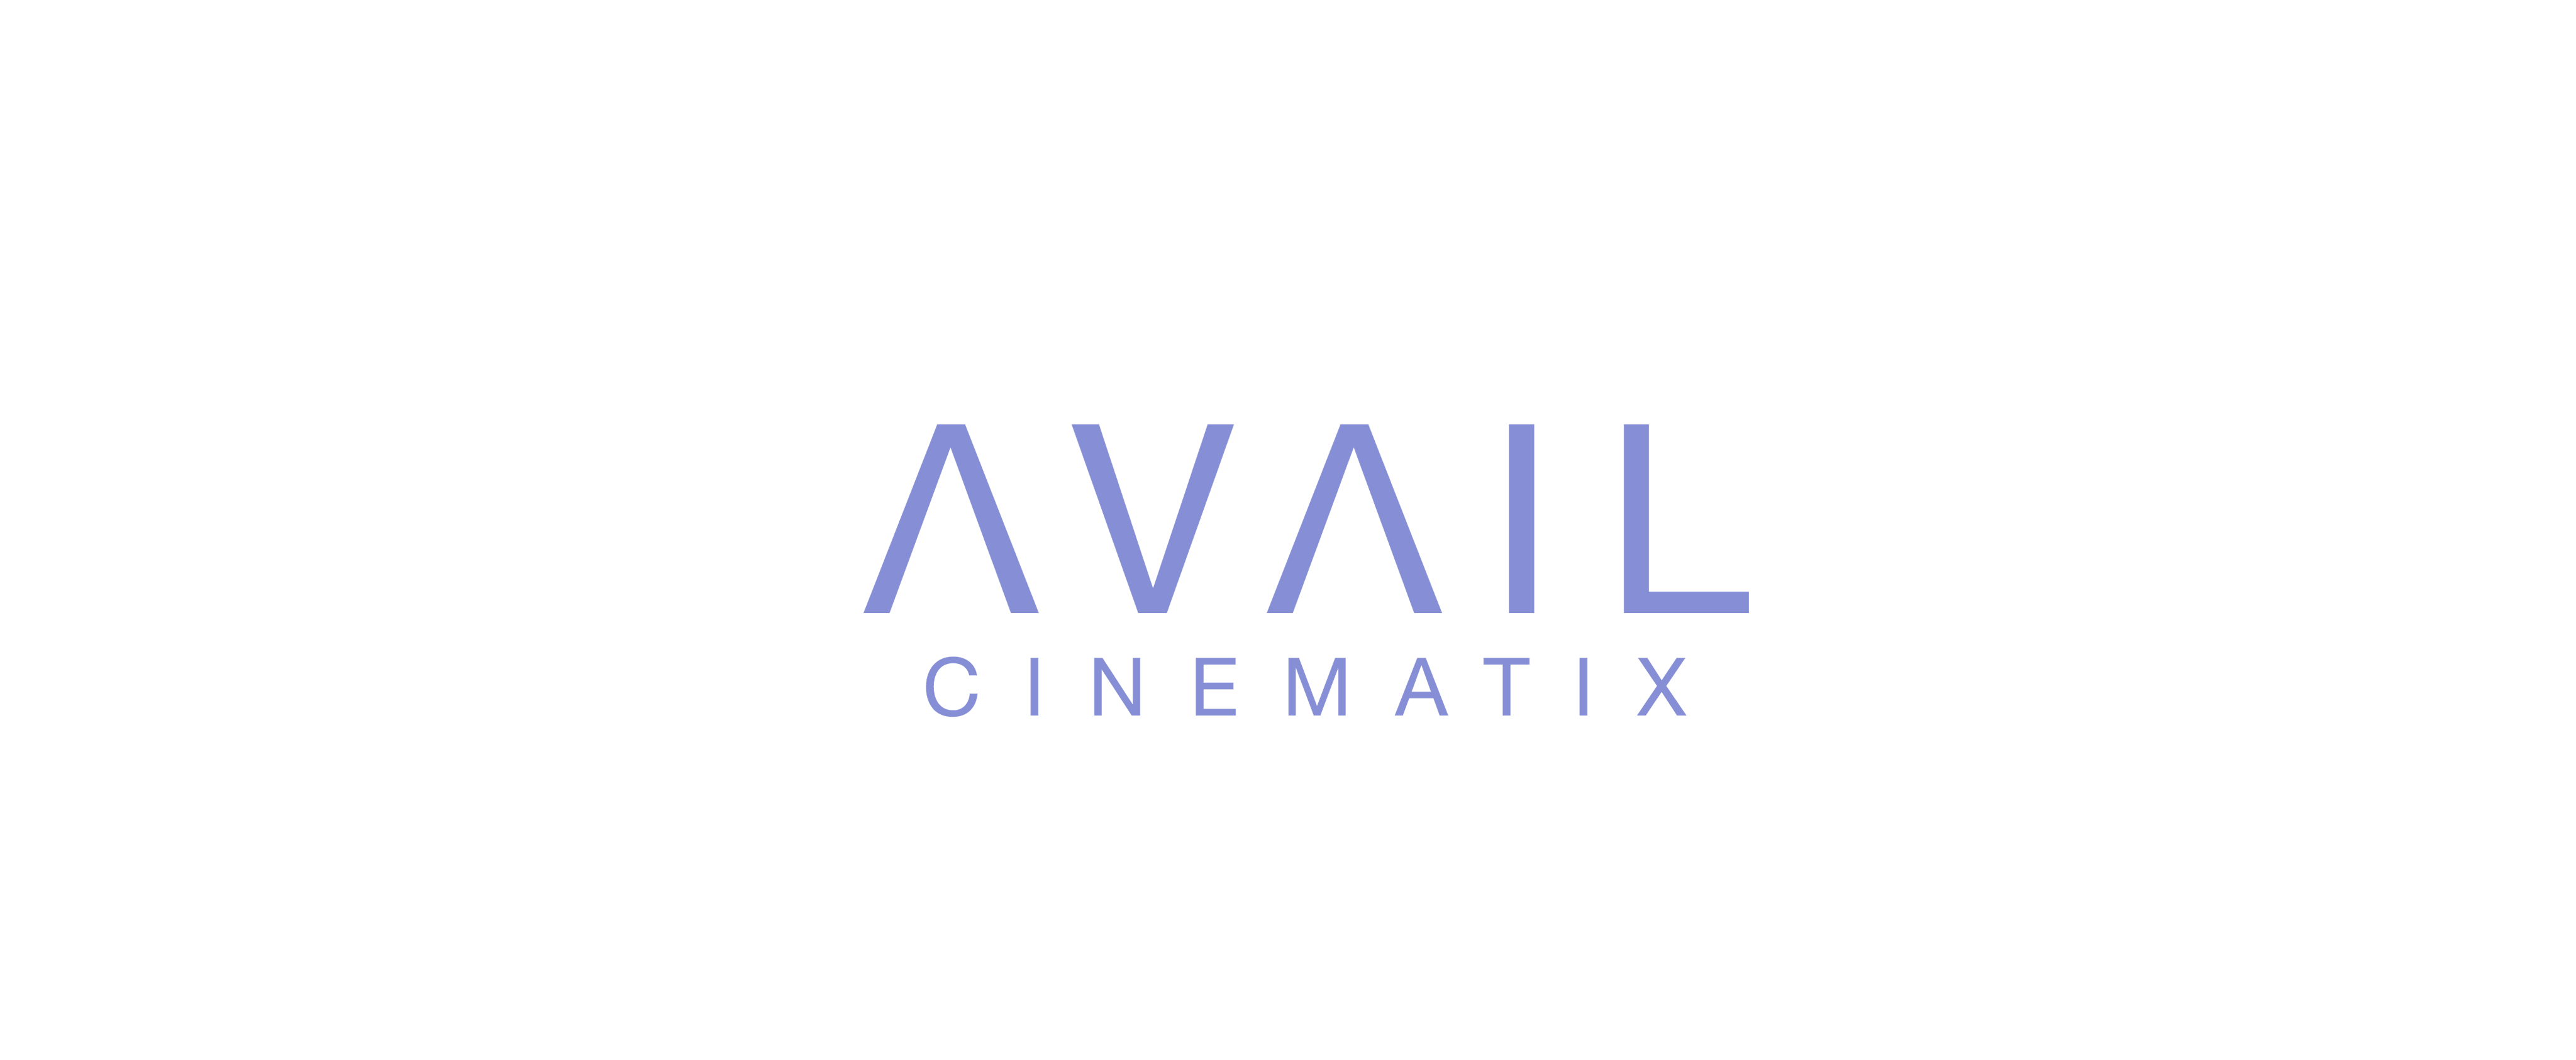 Avail Cinematix Logo